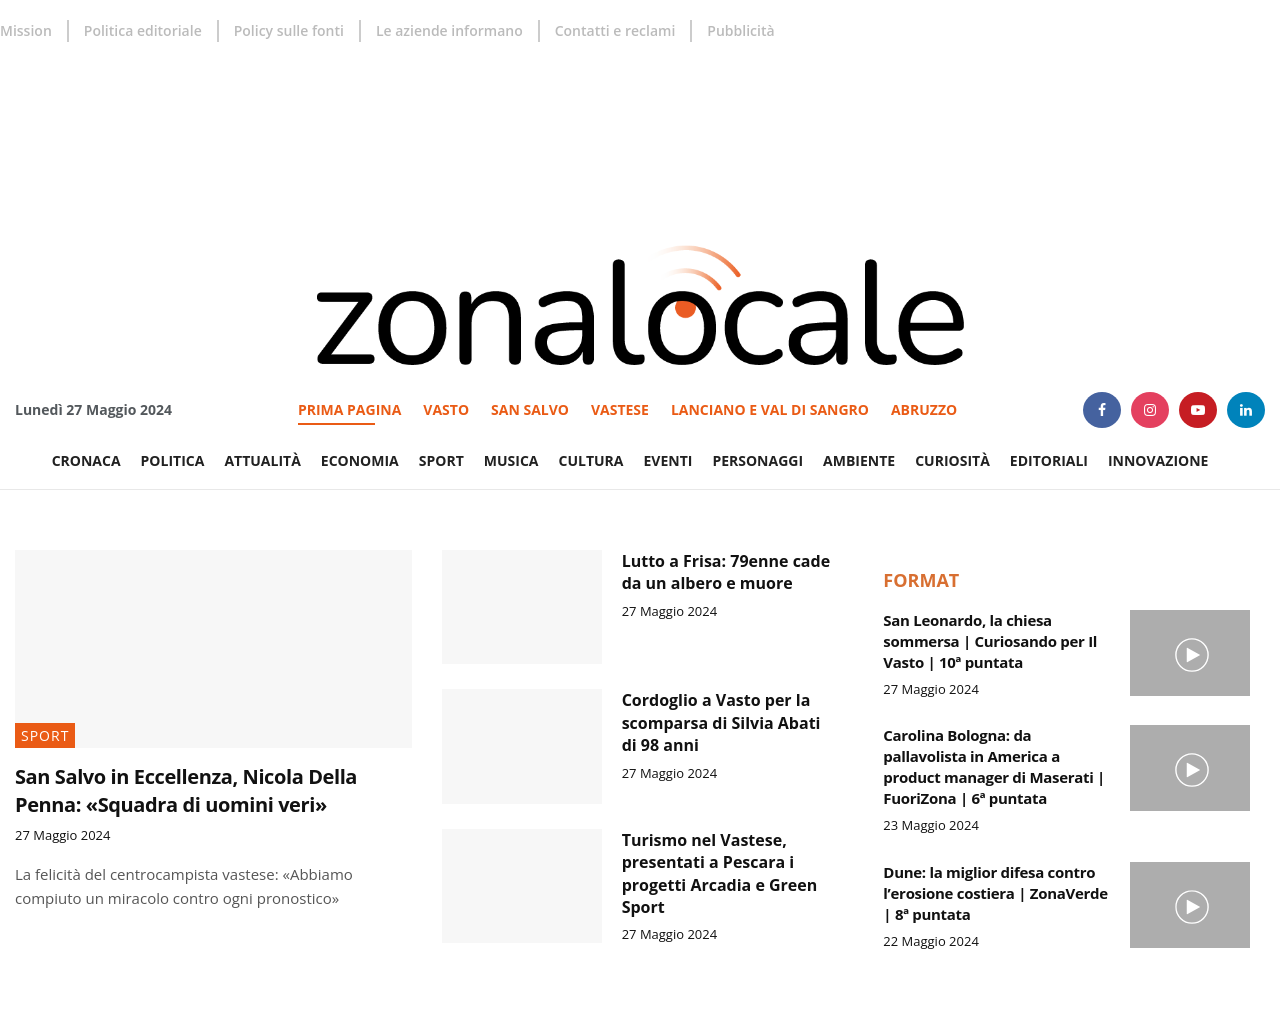 zonalocale.it